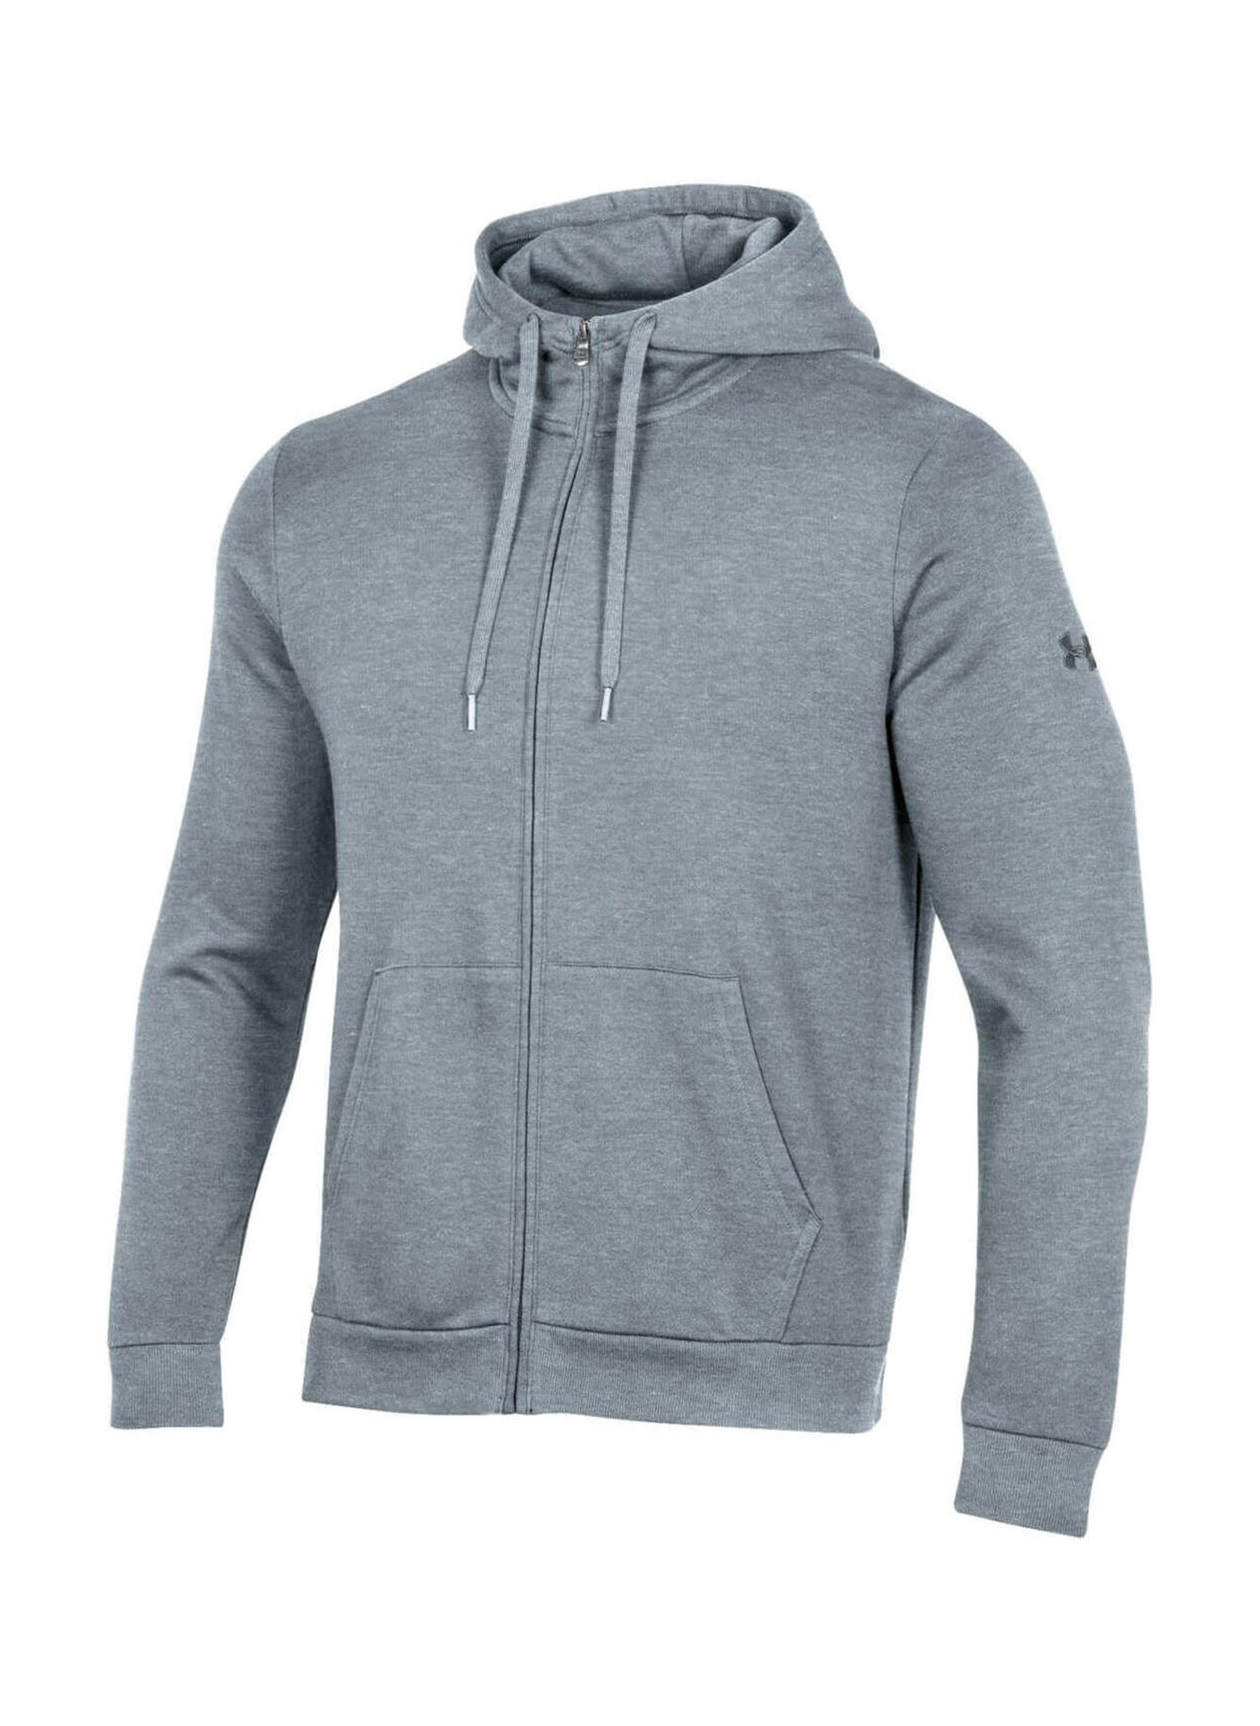 Men's Hoodies Under Armour Grey Sweatshirtsandhoodies